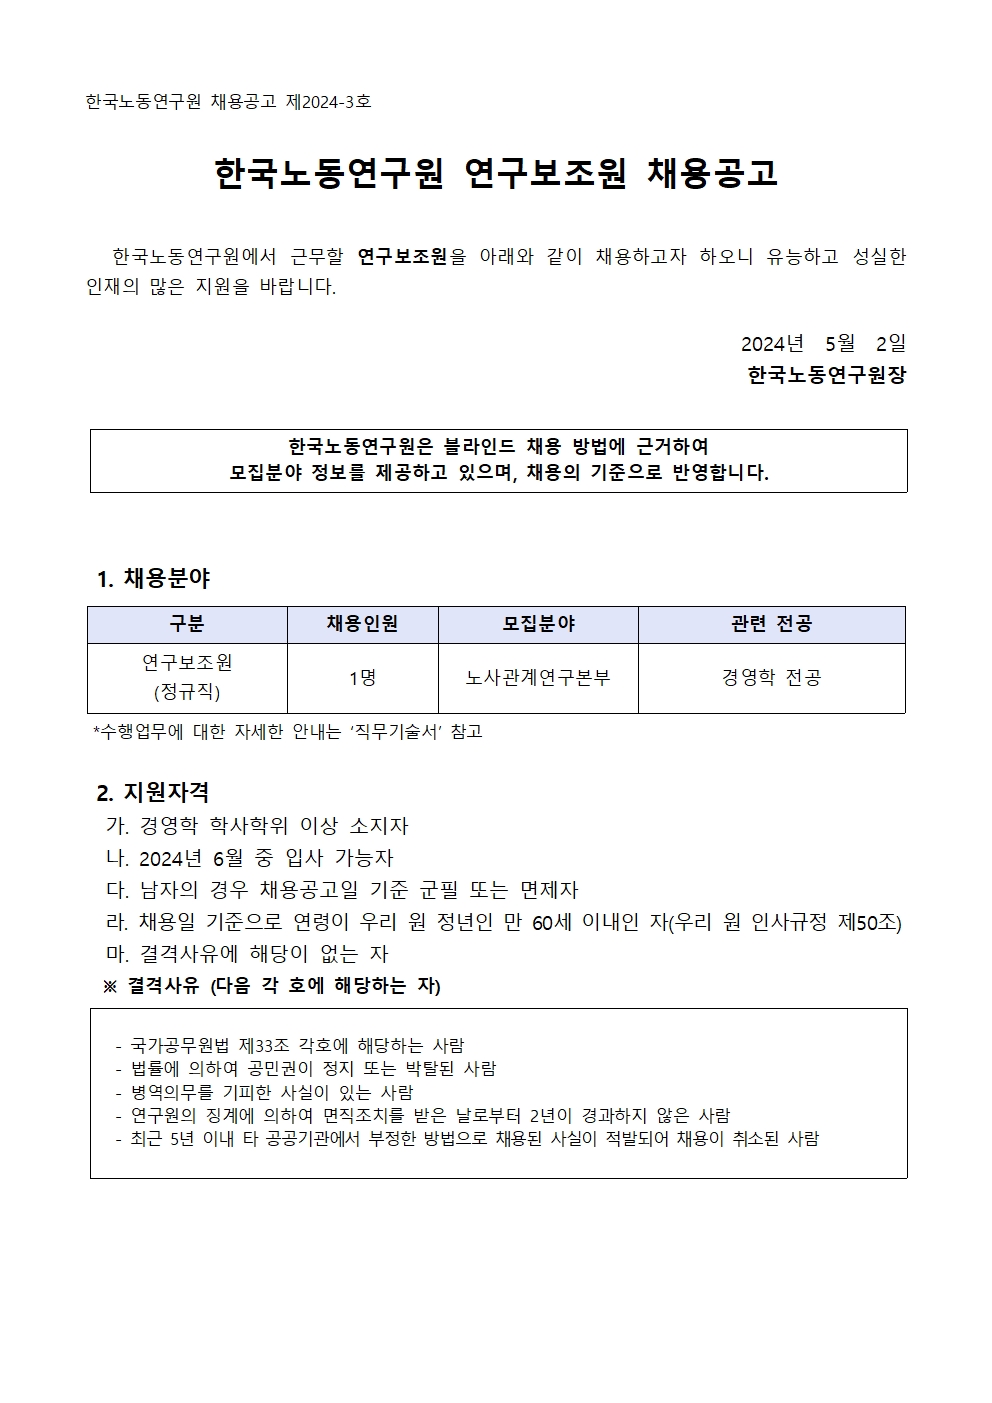 (1/4) 한국노동연구원 연구보조원 채용공고 - 자세한 내용은 하단 참조